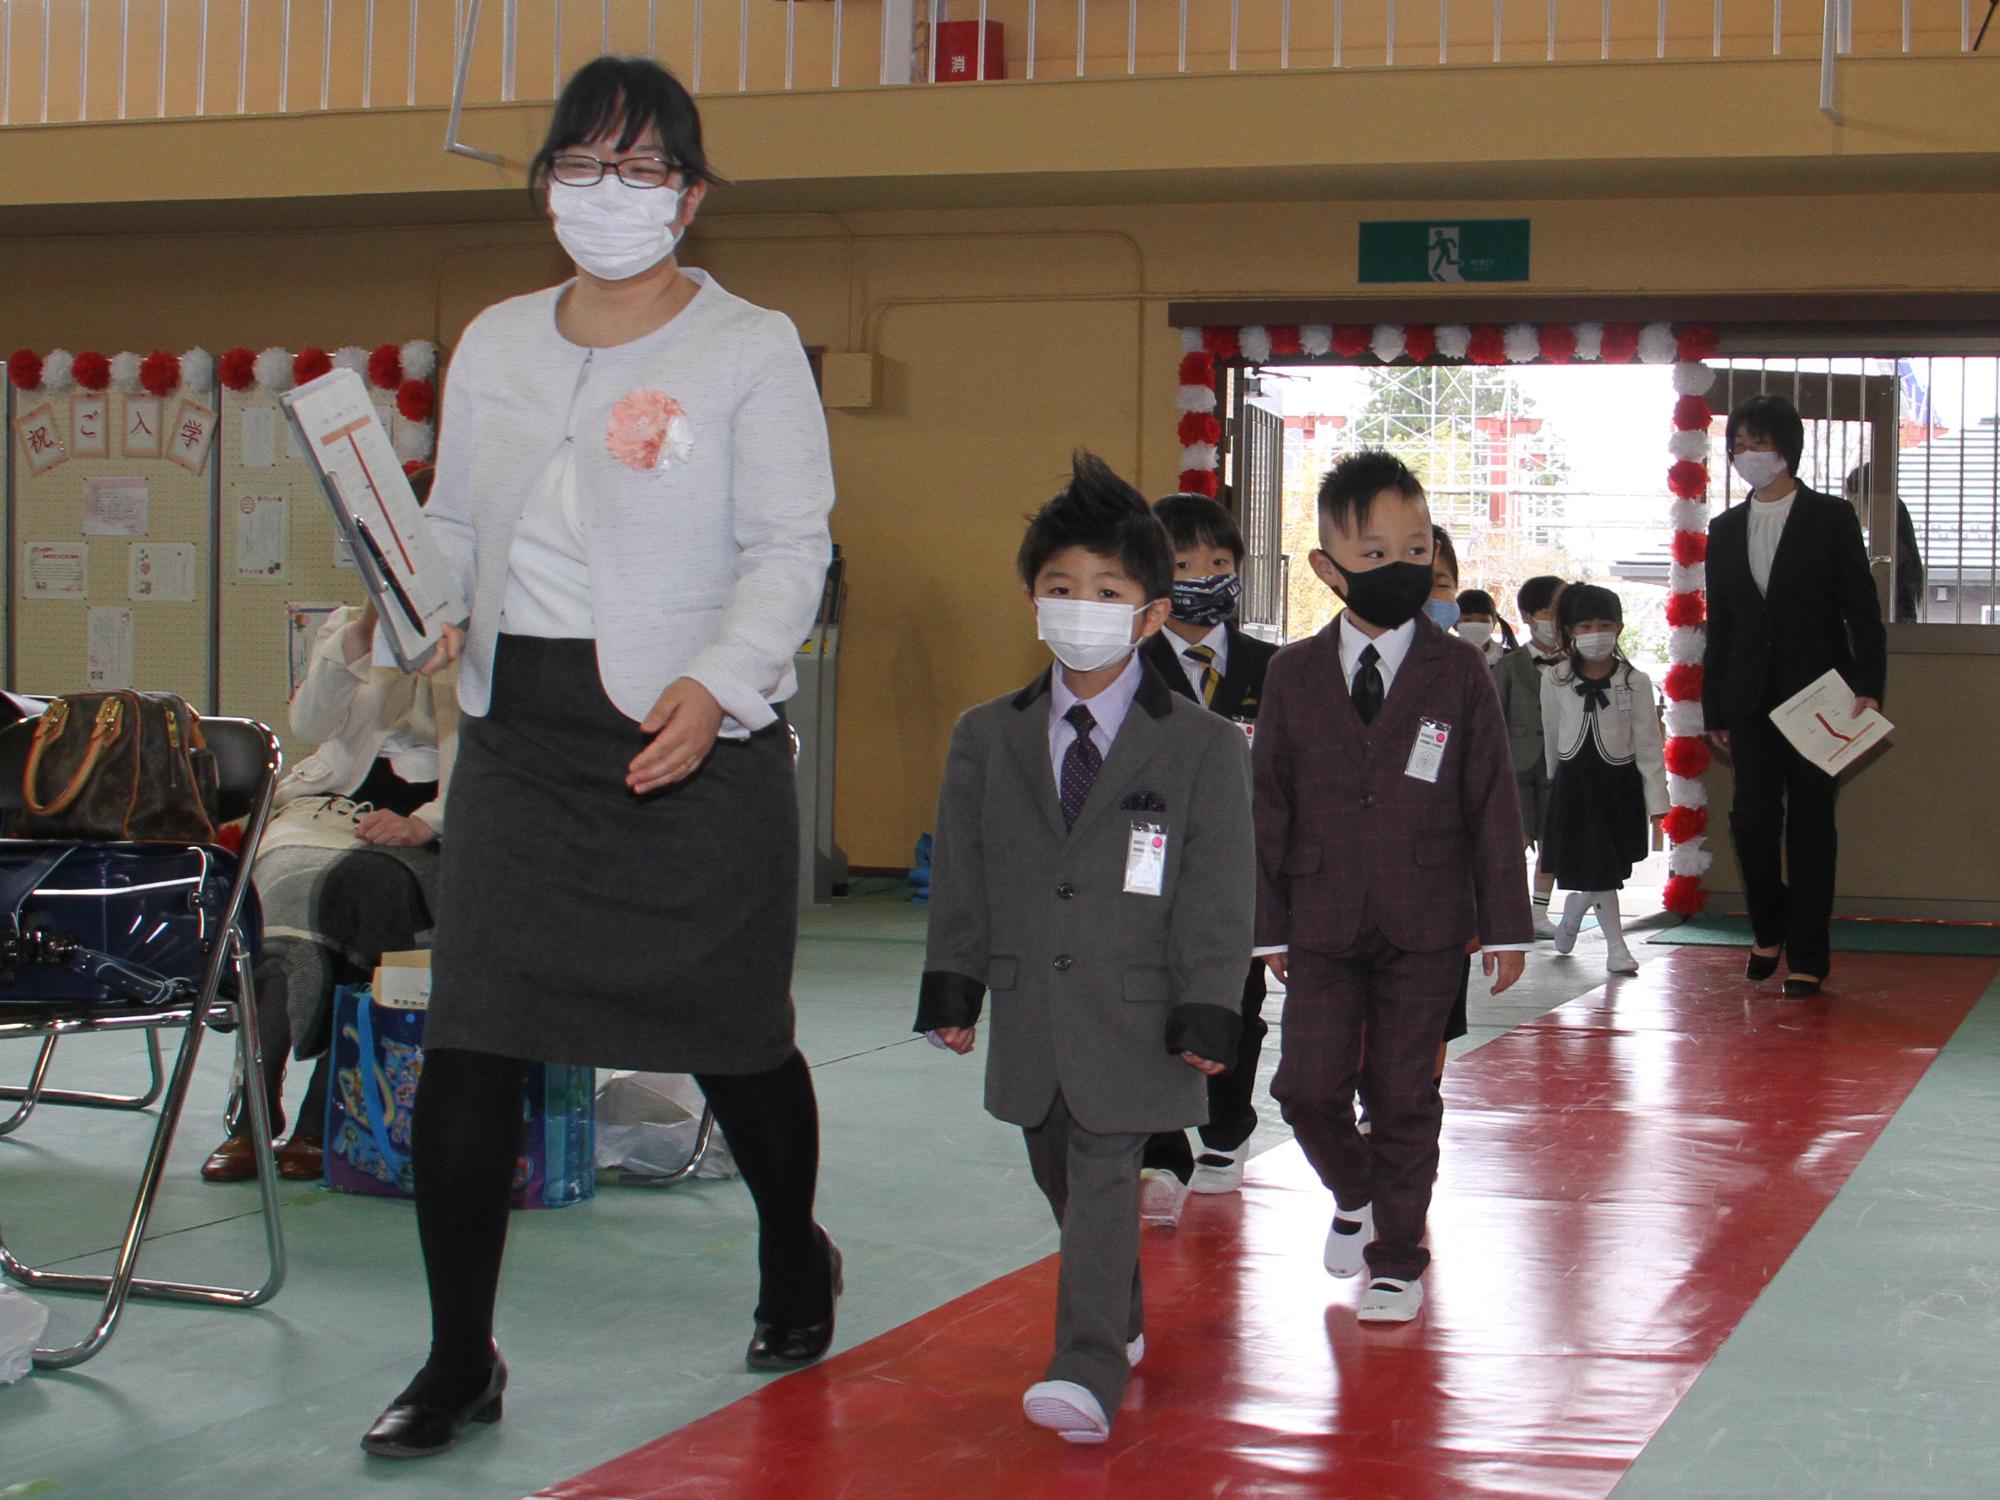 中村第一小学校入学式で式場に入場する新1年生の様子